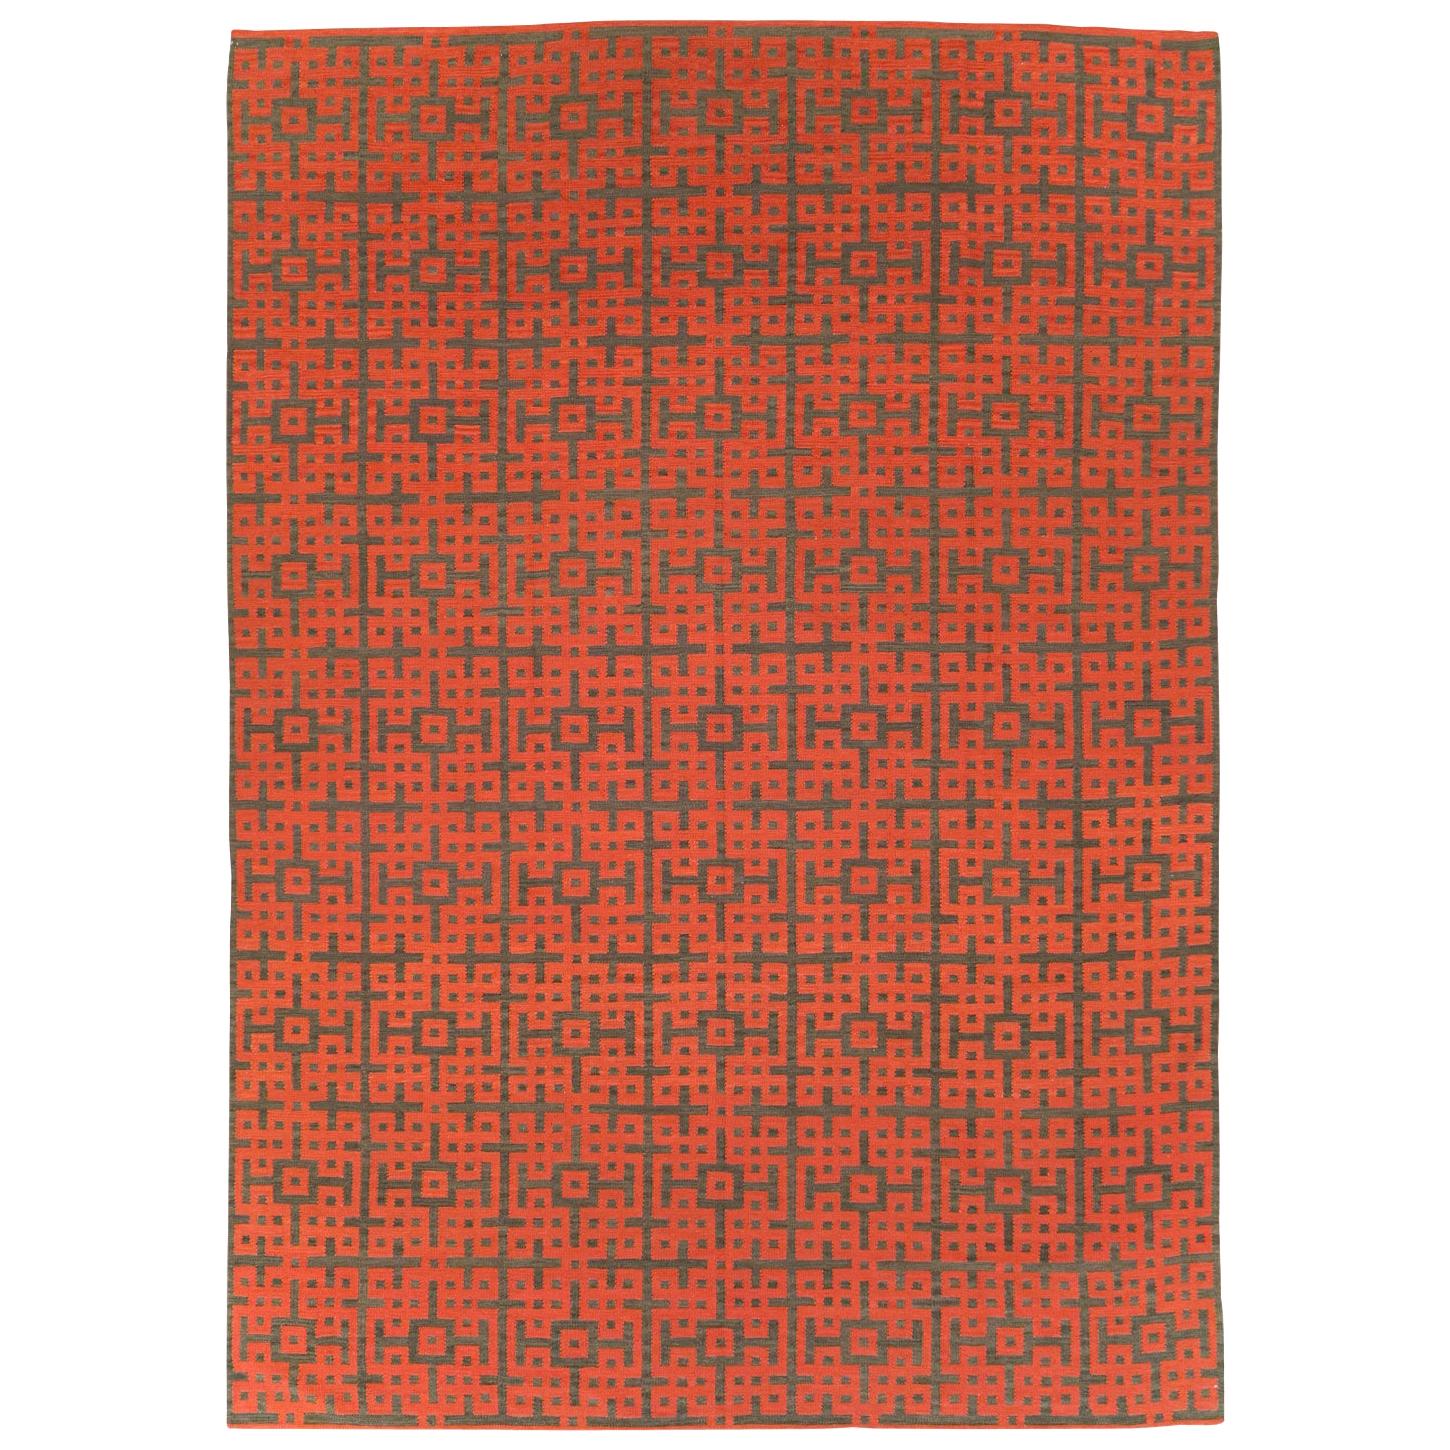 Zeitgenössischer handgefertigter türkischer Flachgewebe-Kelim-Teppich in Rot und Braun in Zimmergröße